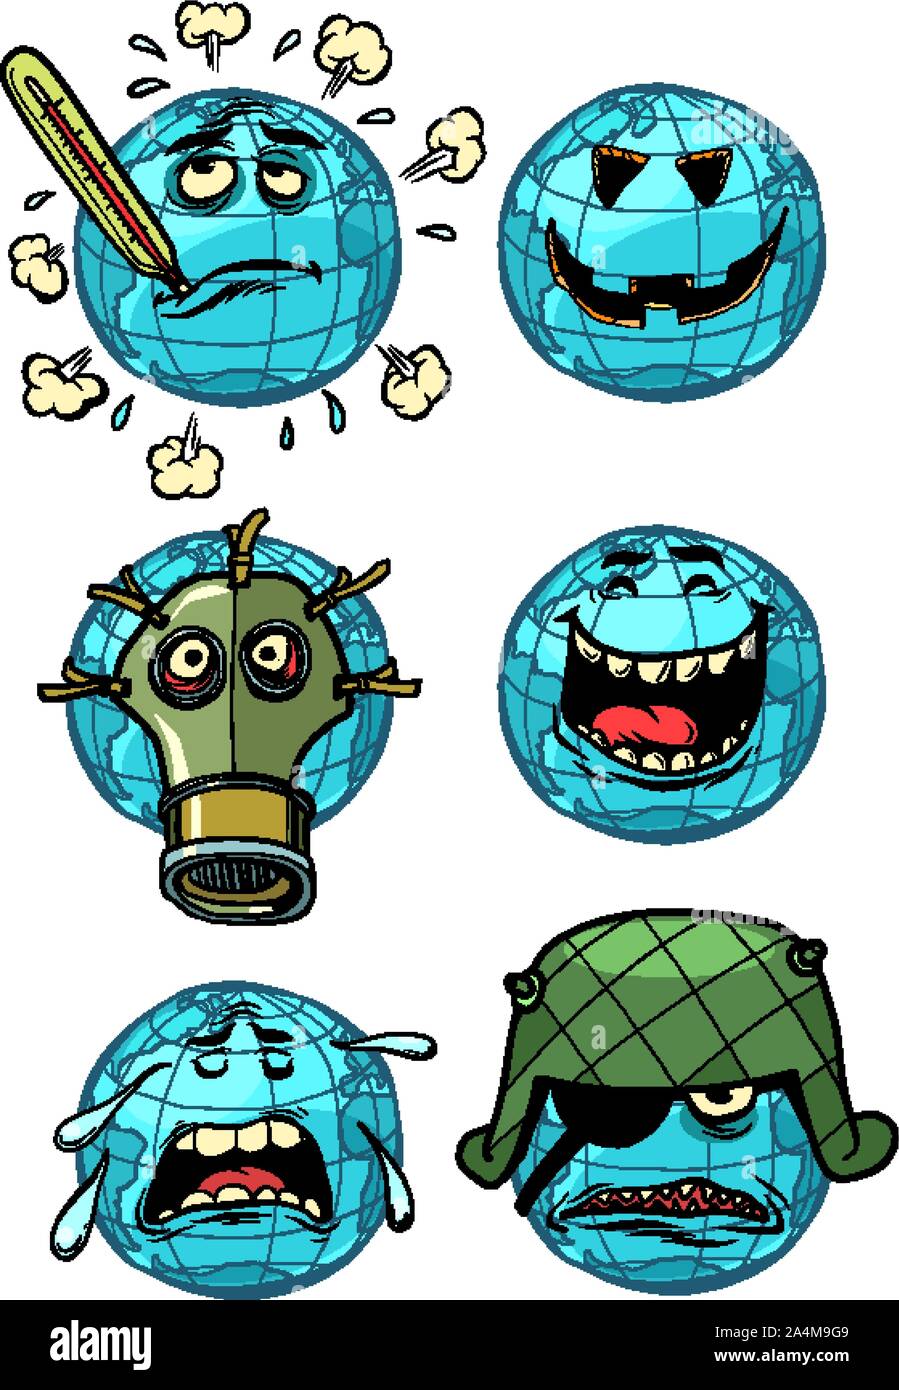 Charakter Planeten Erde. eine Sammlung von Emotionen Emoji eingestellt. Themen der Ökologie und globale Erwärmung, Krieg, Lachen und Mühe. Comic cartoon Pop Art ret Stock Vektor